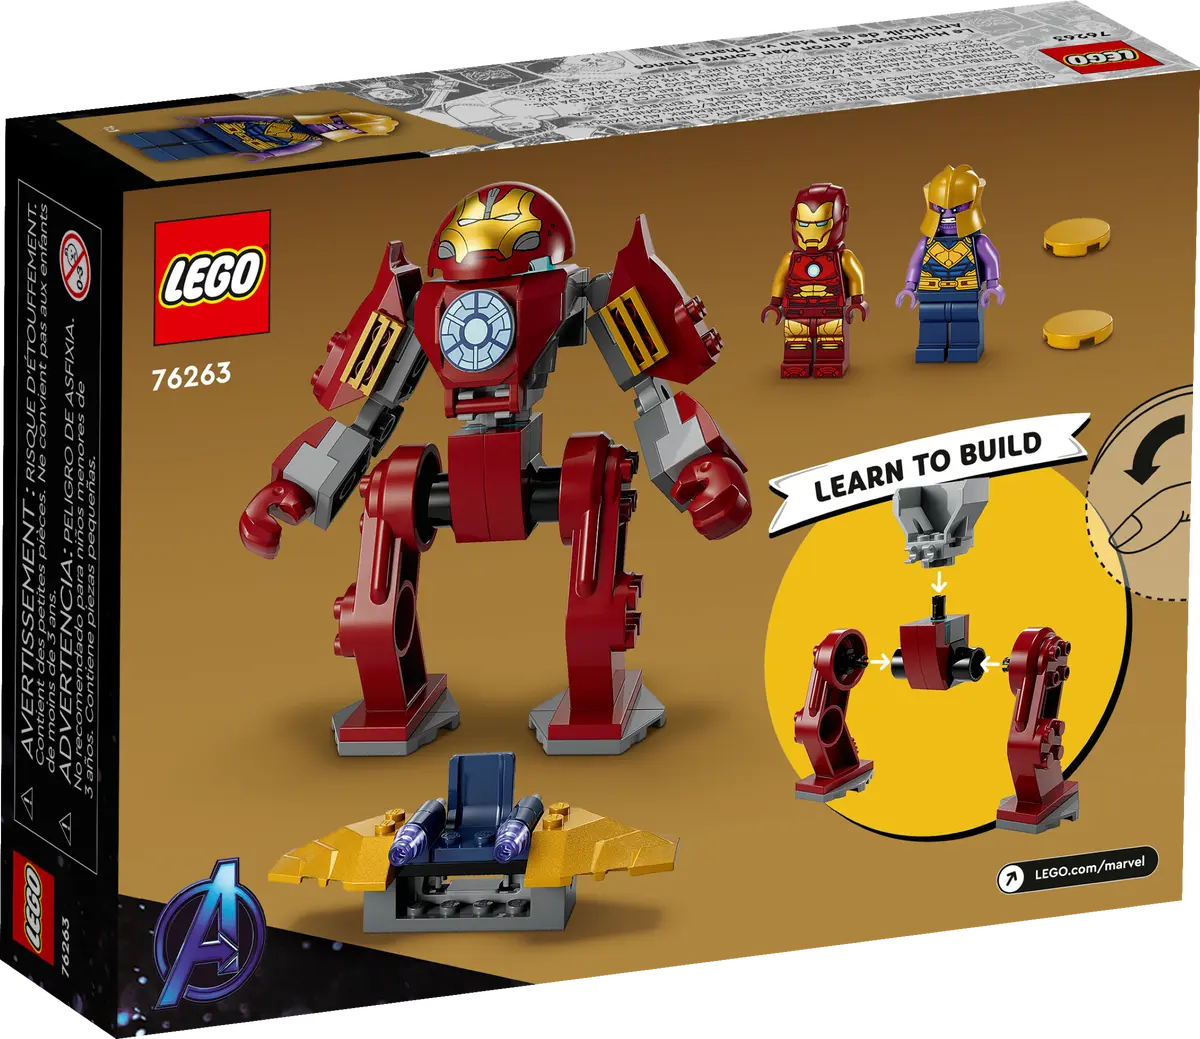 Disfraz de pieza roja de LEGO para adulto